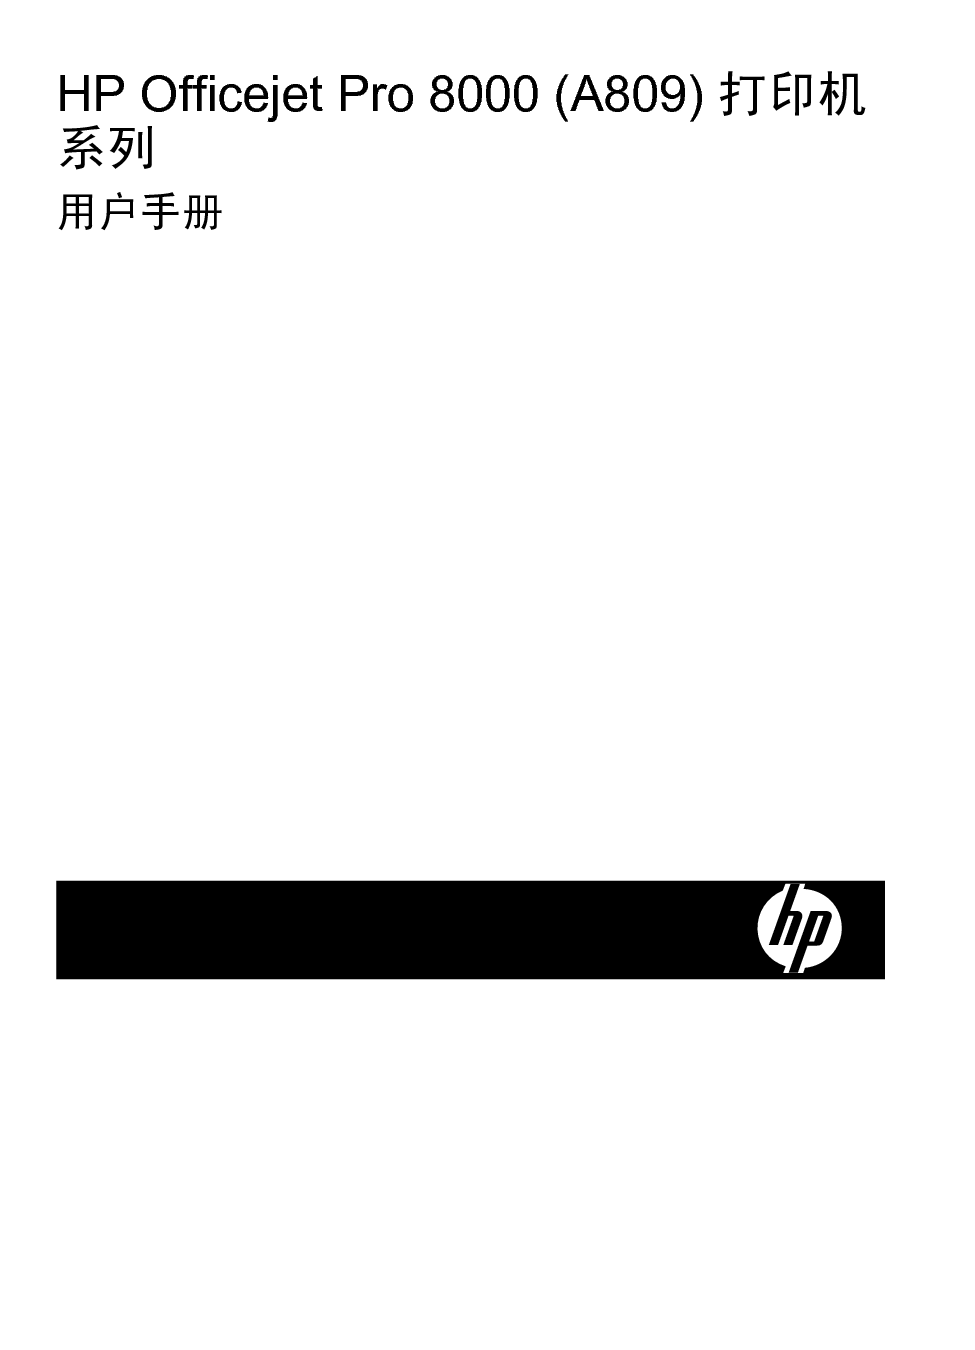 惠普 HP OfficeJet A809 用户指南 第2页